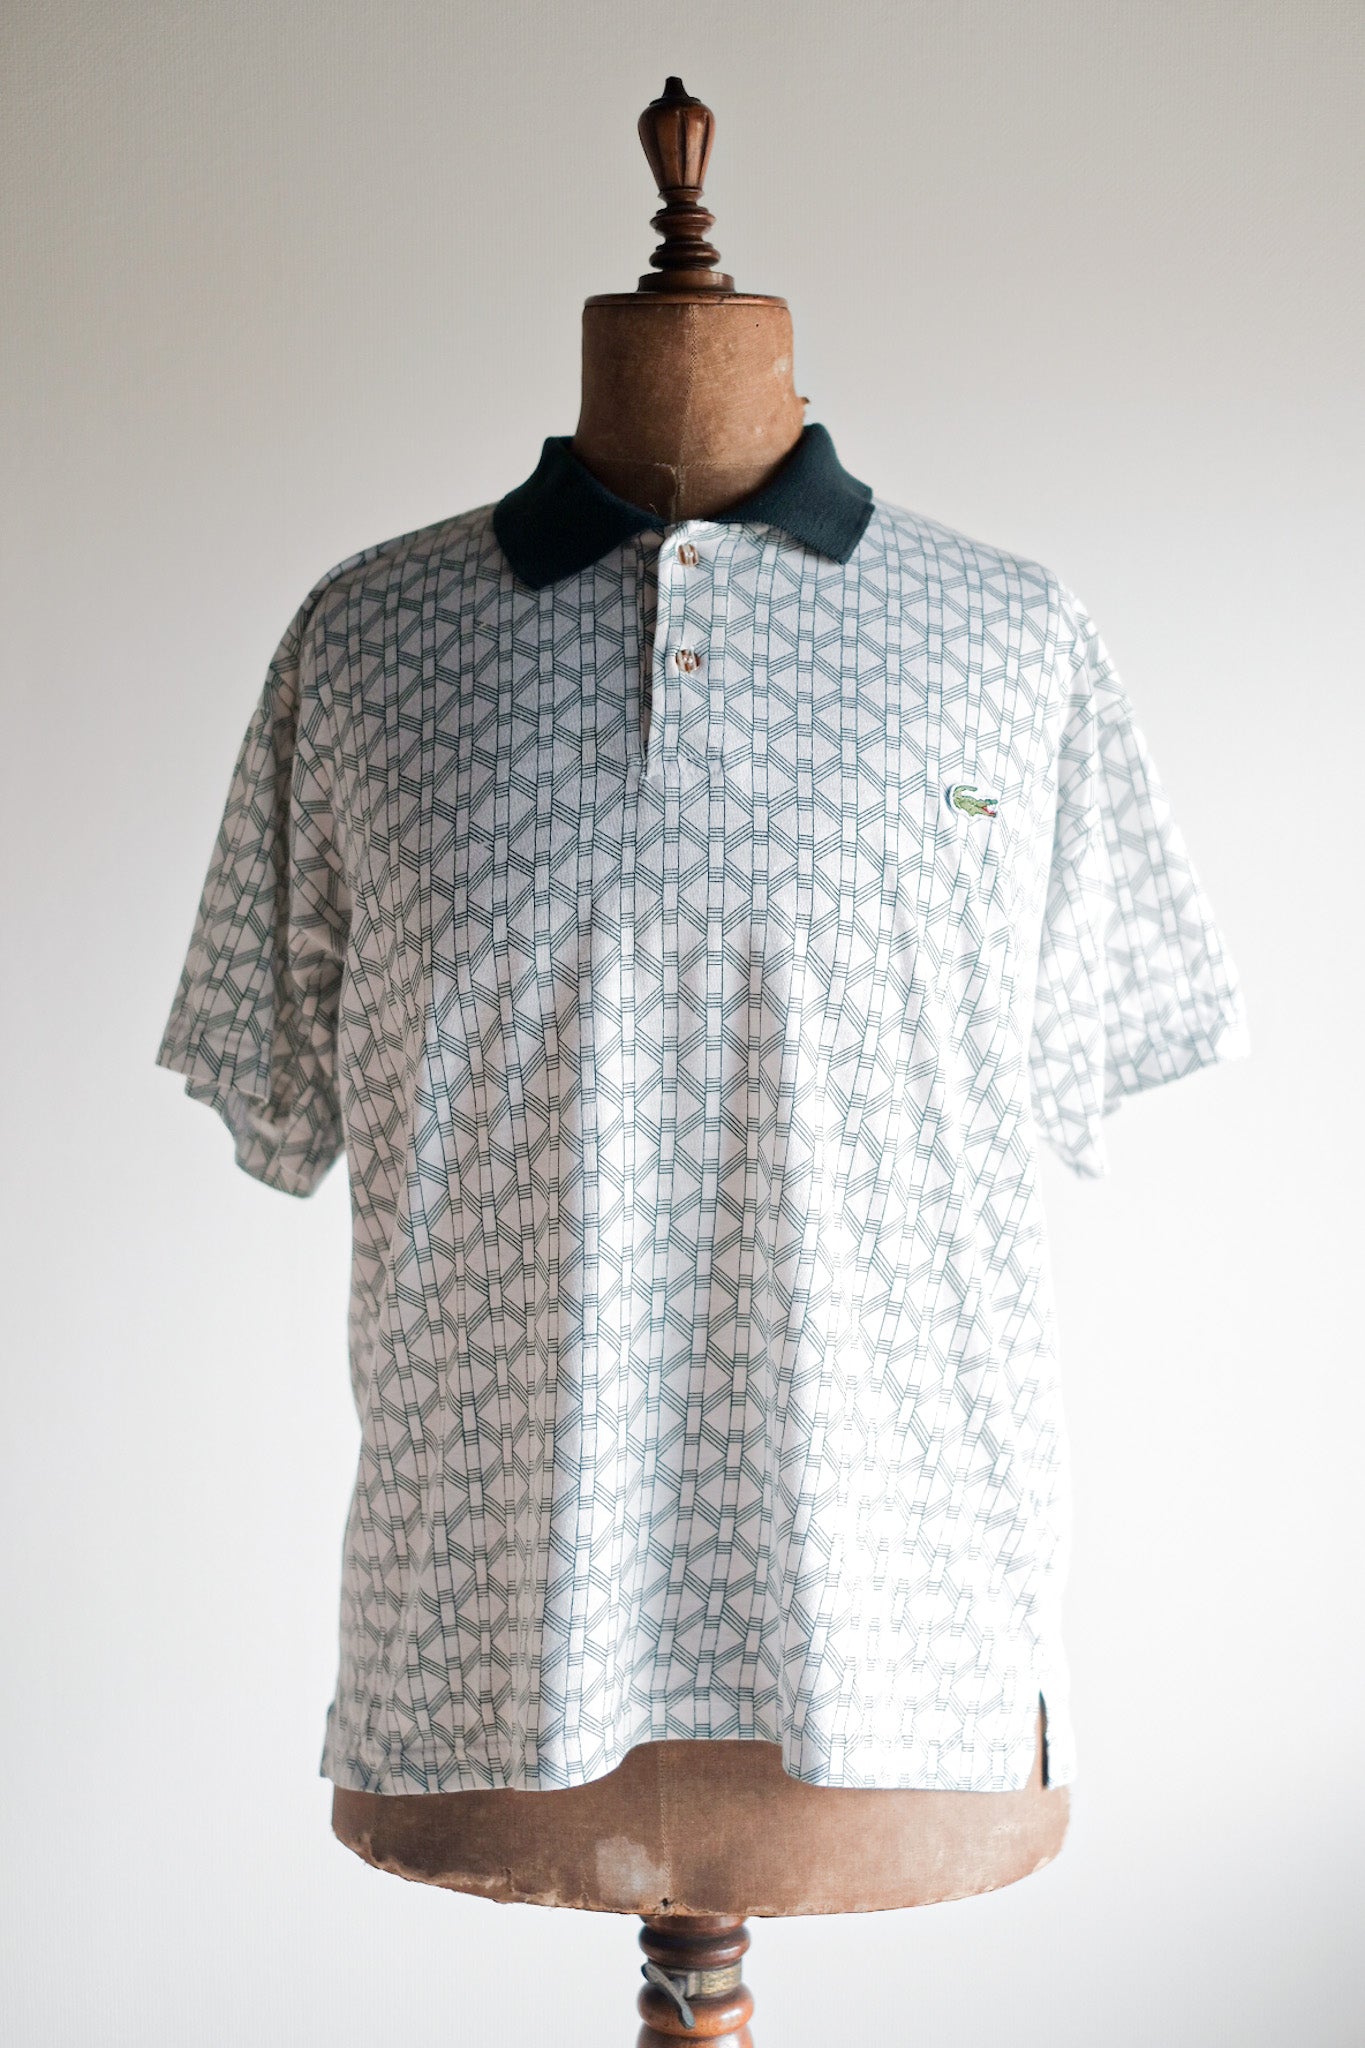 [〜80年代]顏色的lacoste s/s polo襯衫尺寸。5“多色”